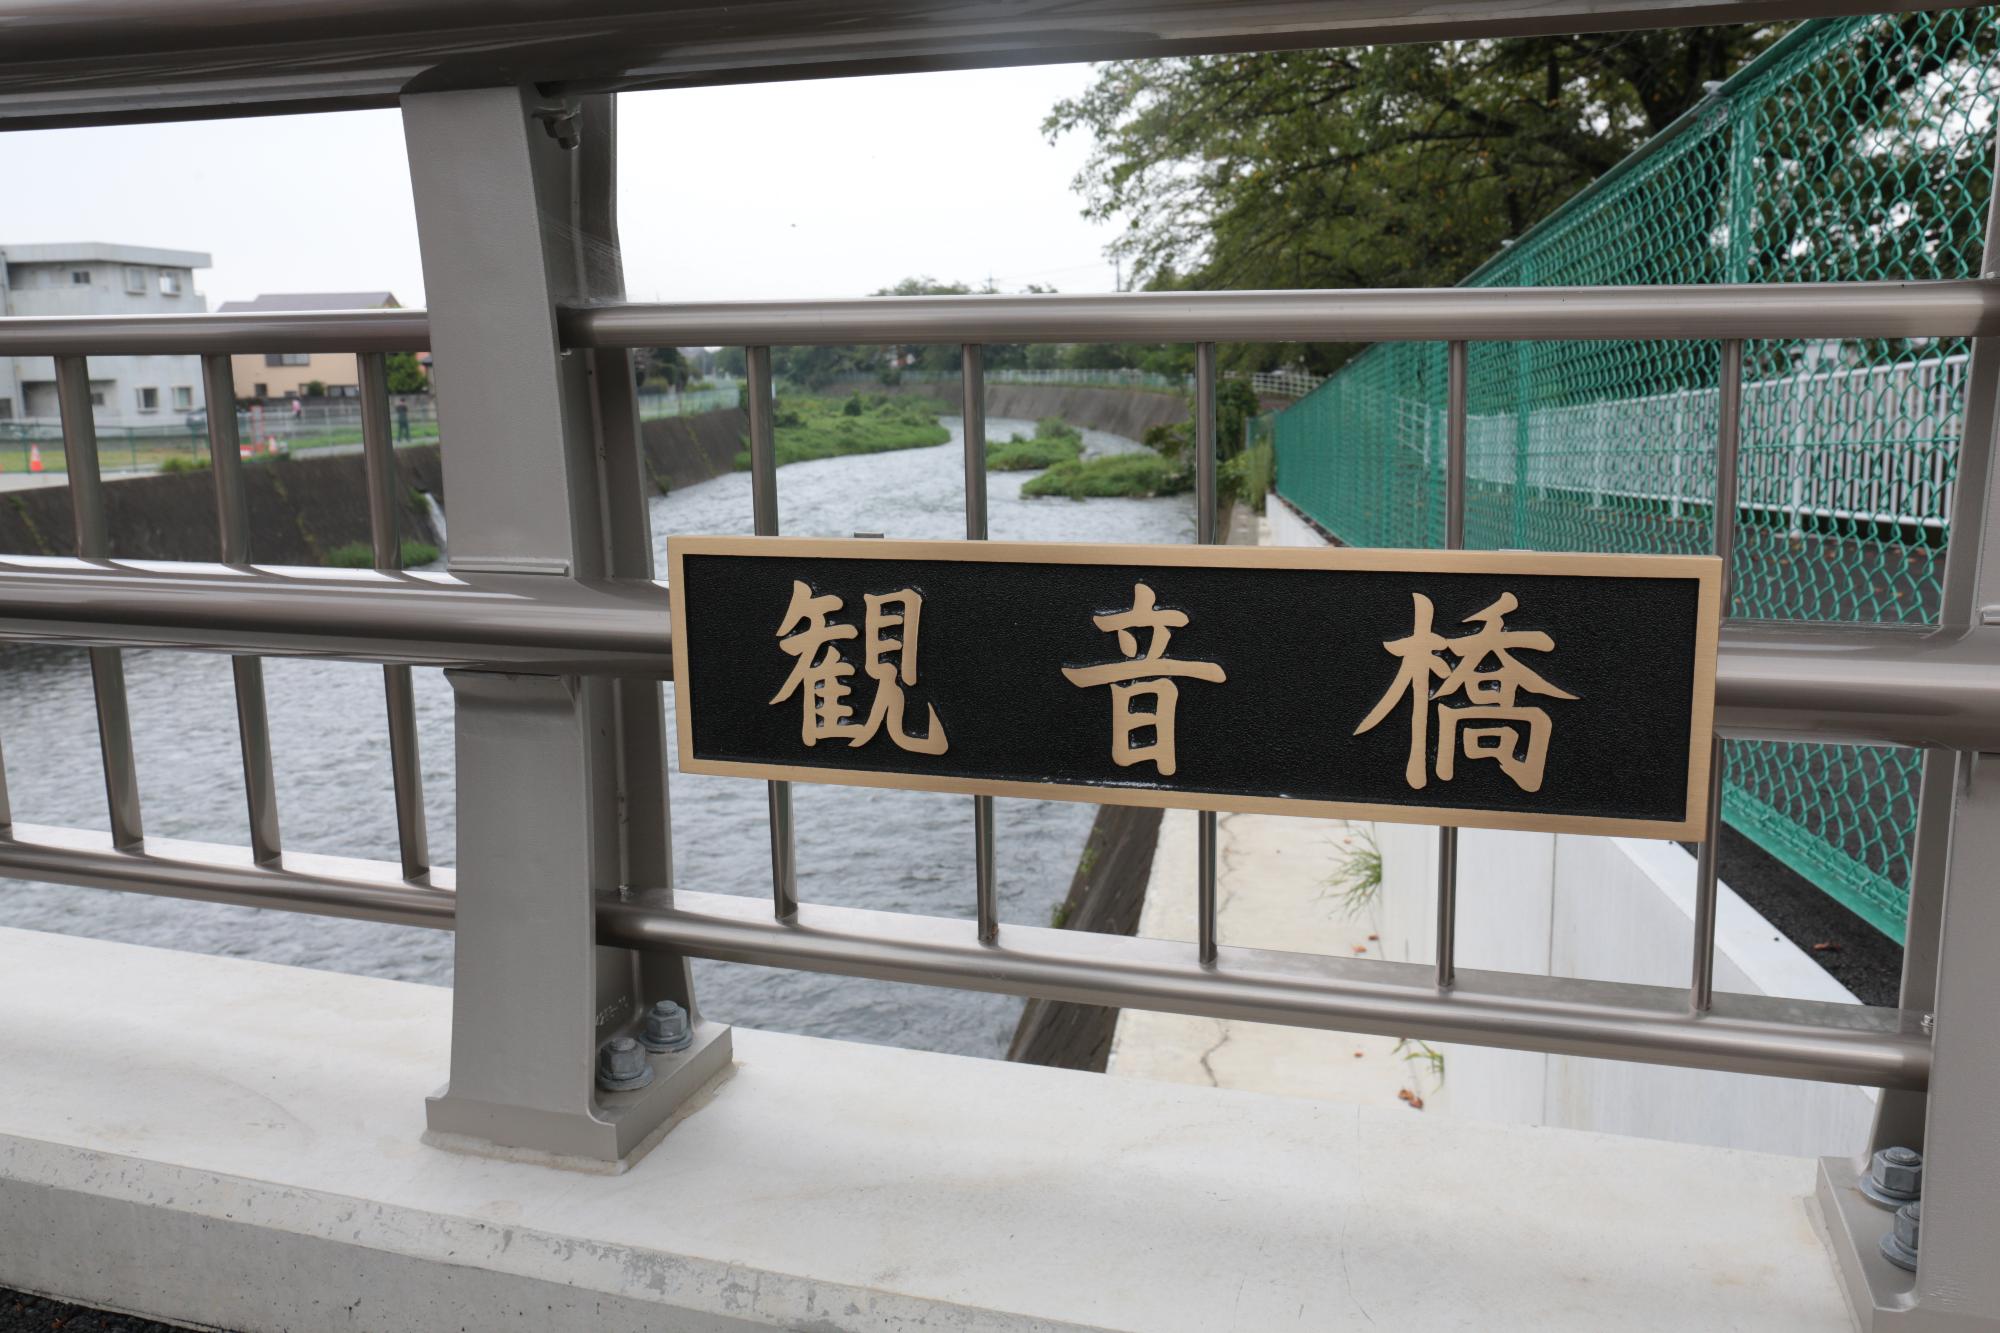 橋の名前が書いてある橋名板の写真